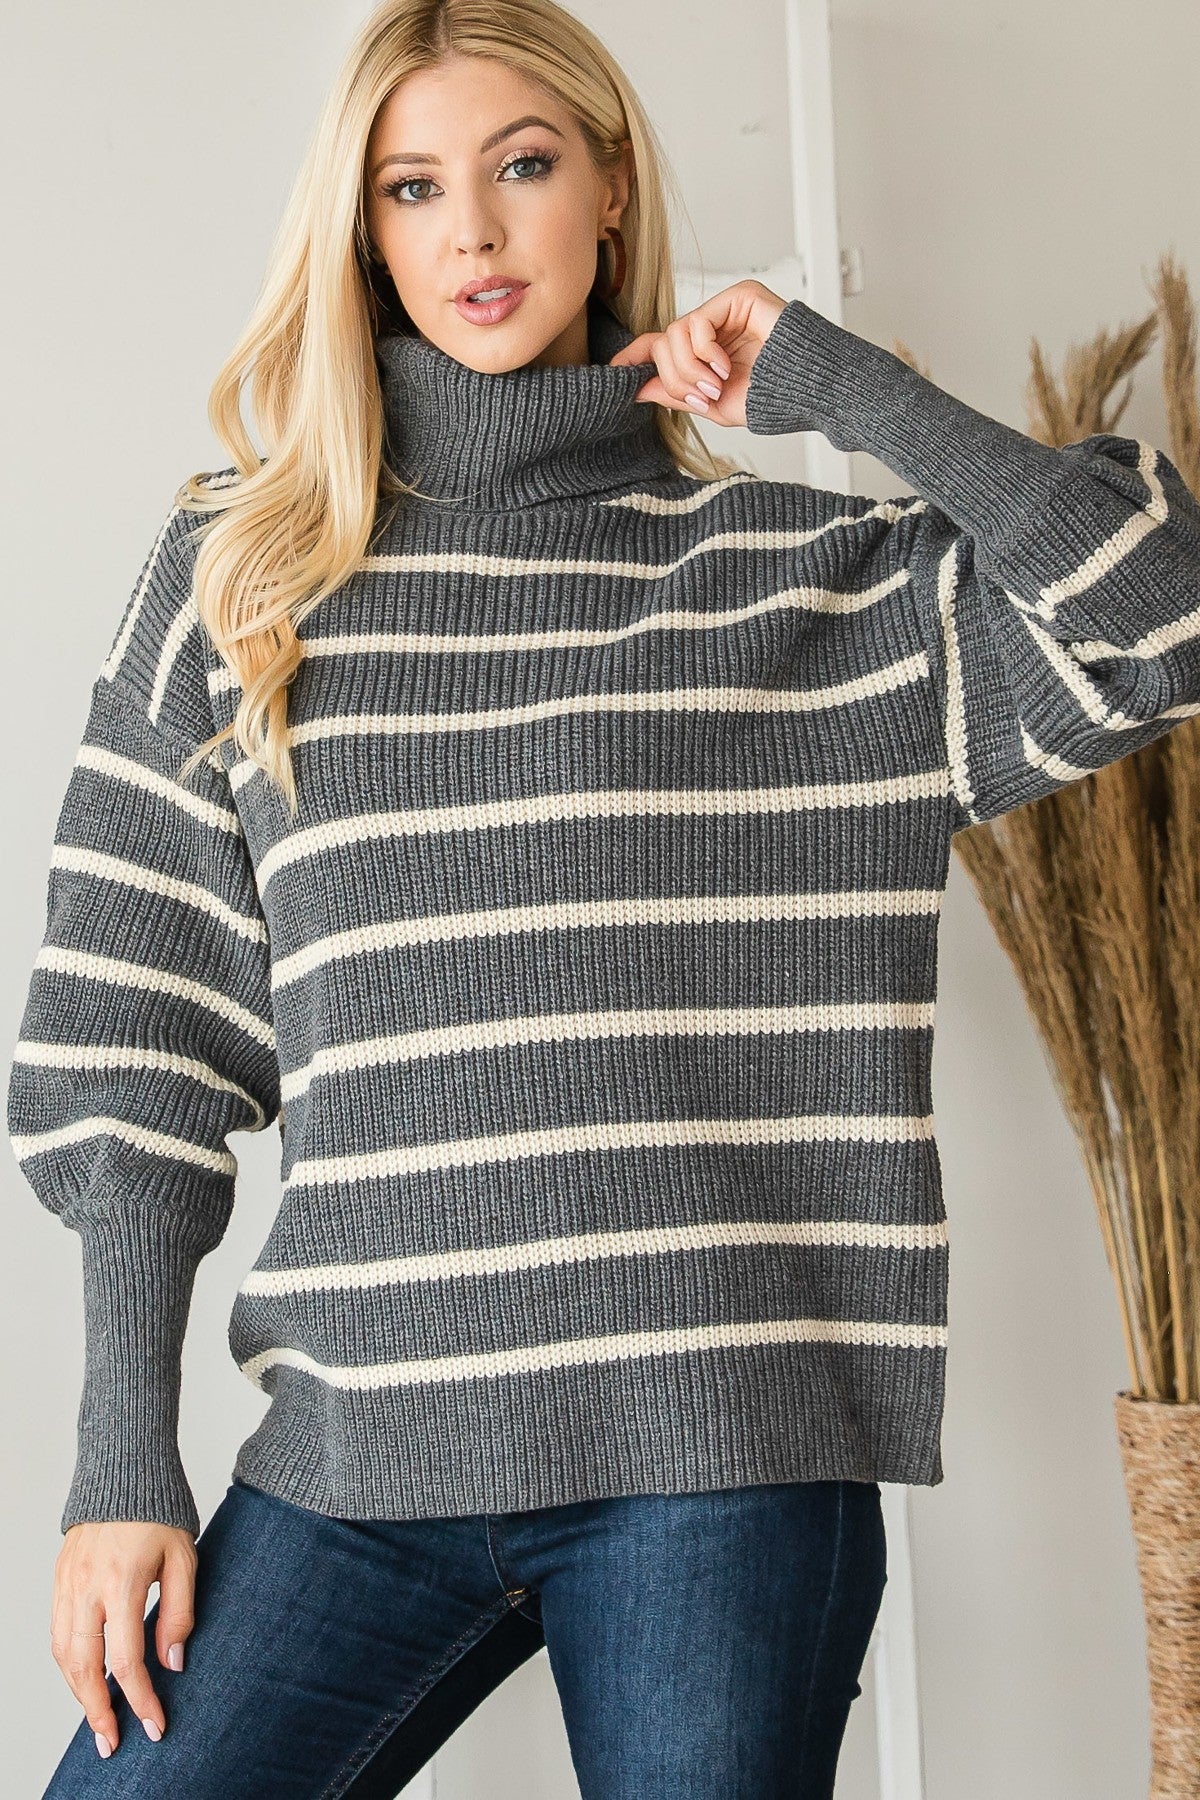 Heavy Knit Striped Turtle Neck Knit Sweater Shirts & Tops jehouze 